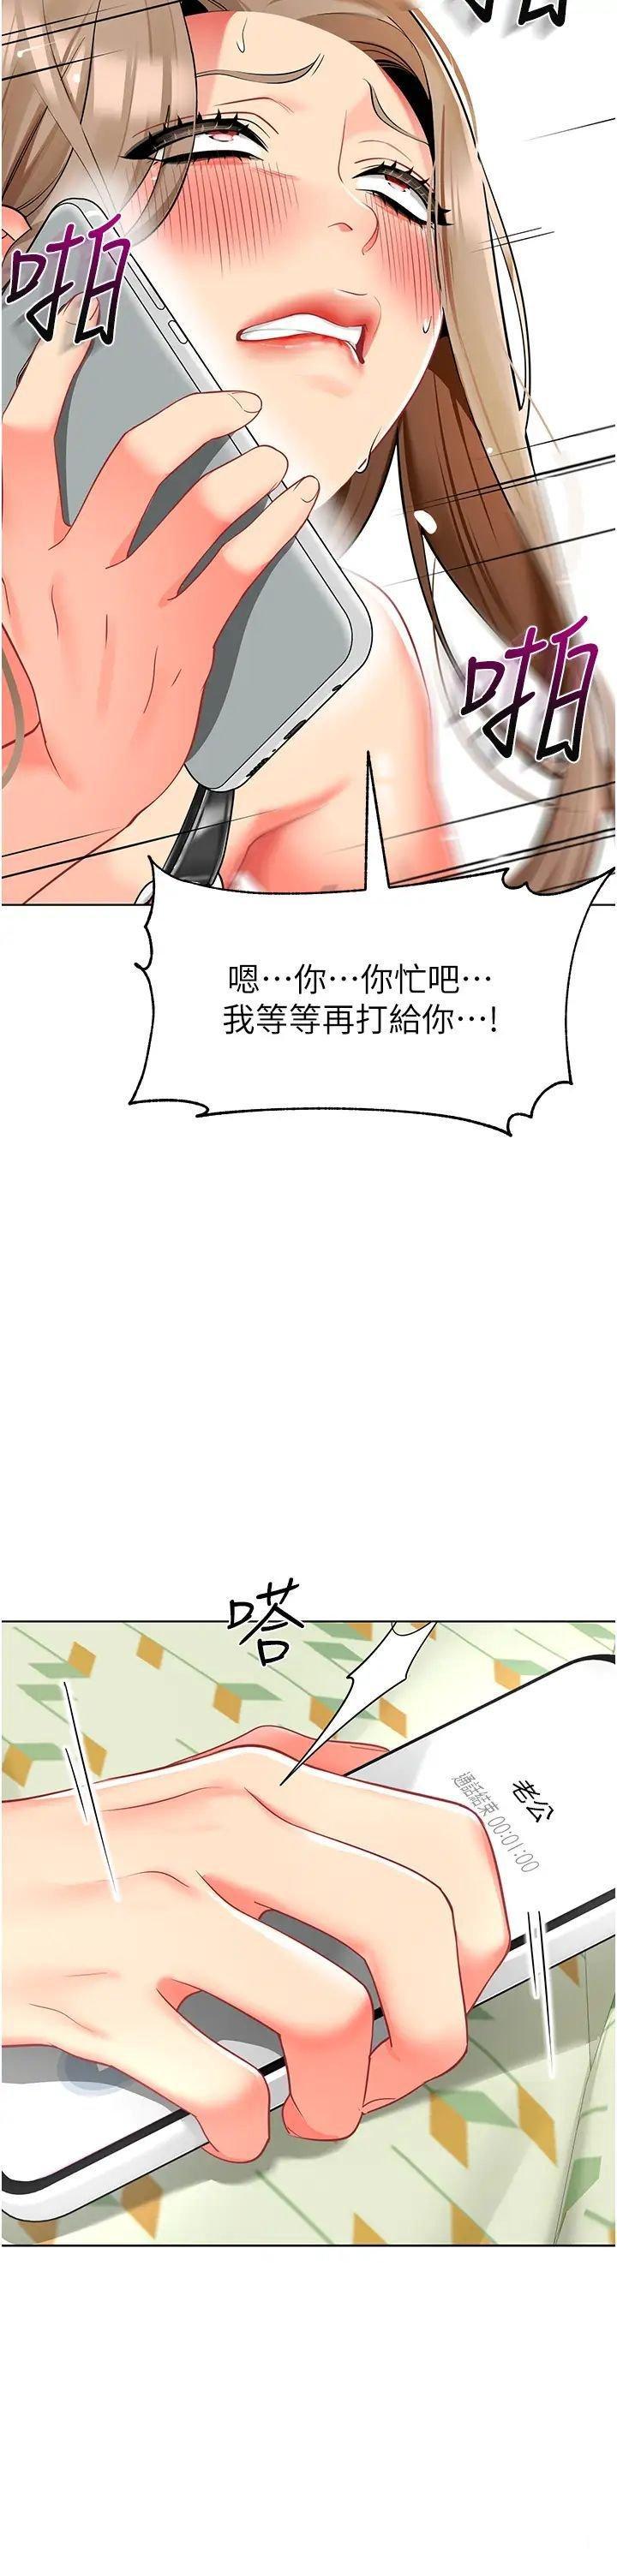 韩国污漫画 幼兒園老師們 第24话_漆黑影院的淫爪 2